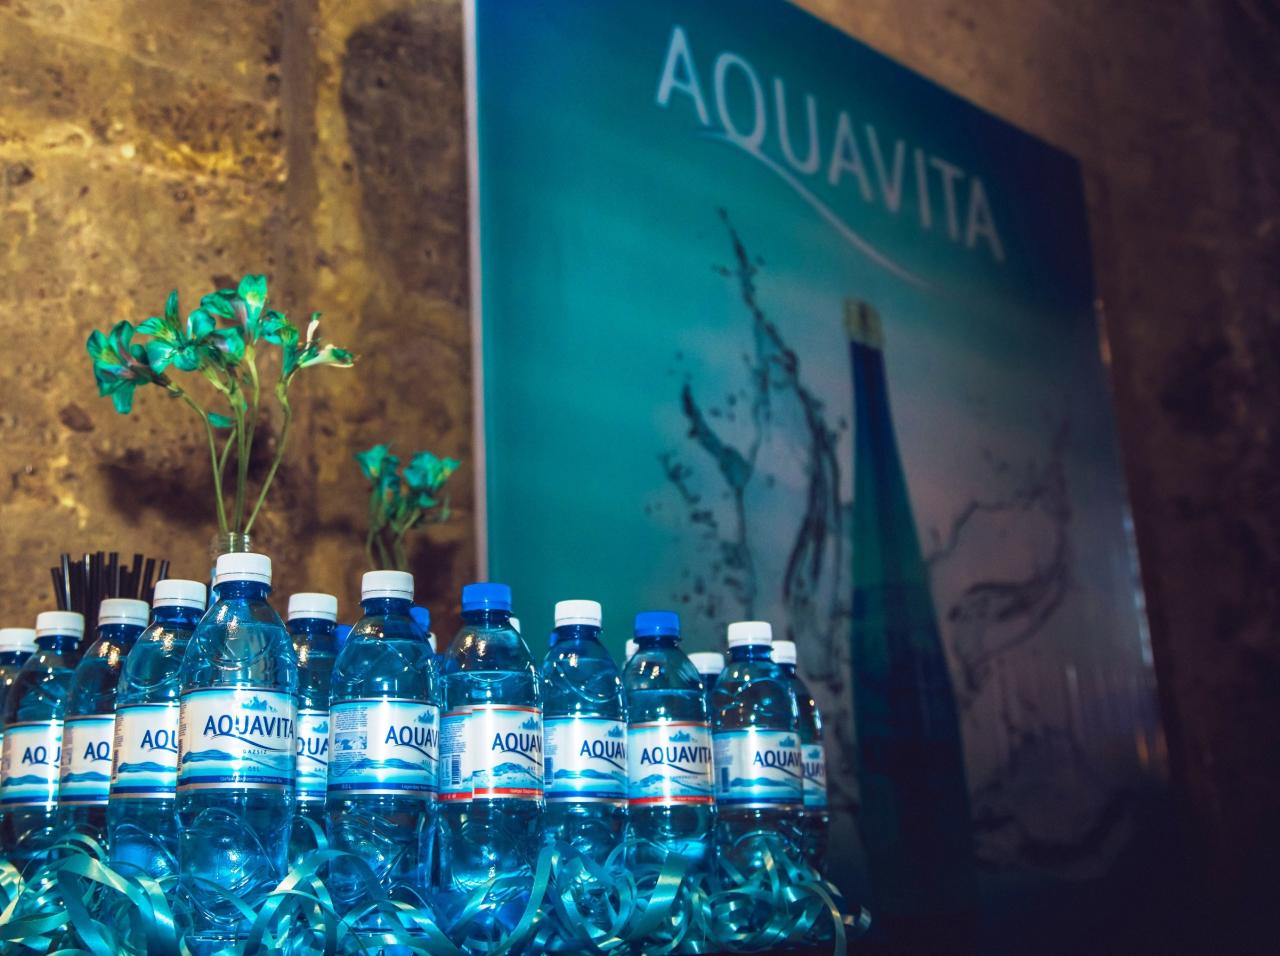 Торговая марка «Aquavita» поддержала команду Azerbaijan Fashion Week, обеспечив их натуральной минеральной водой